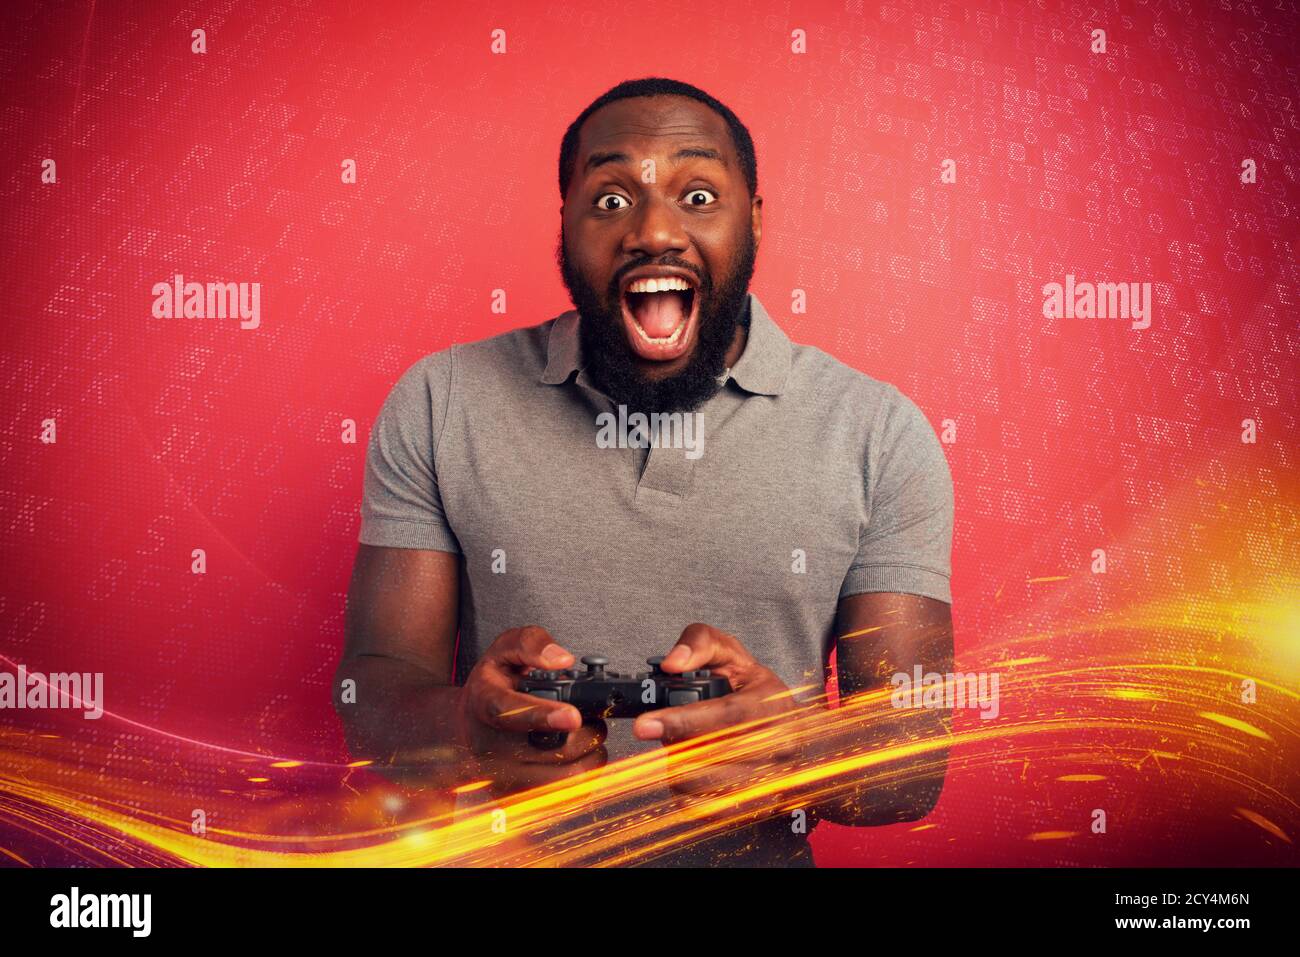 Happy man gioca con un videogioco su sfondo rosso Foto Stock